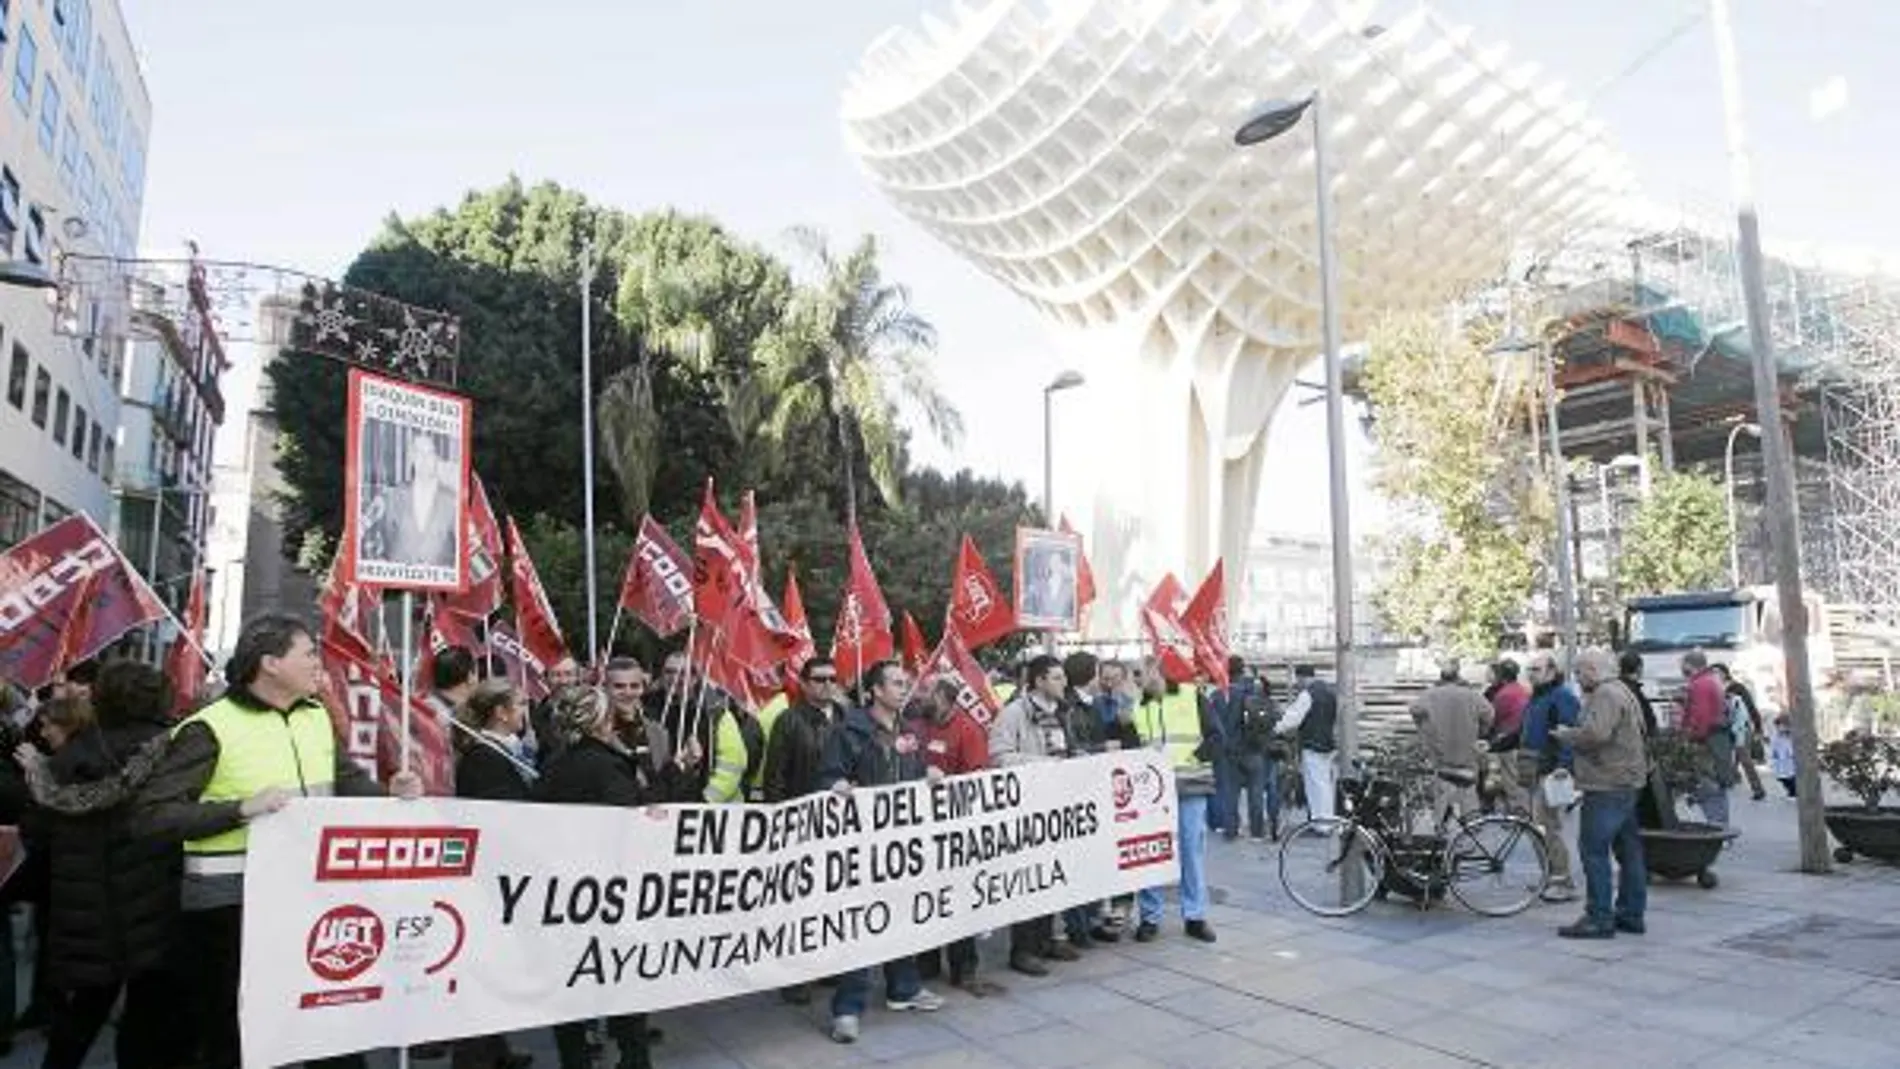 Los manifestantes, provistos de pancartas, iniciaron la marcha en la plaza de la Encarnación, bajo los parasoles del Metropol